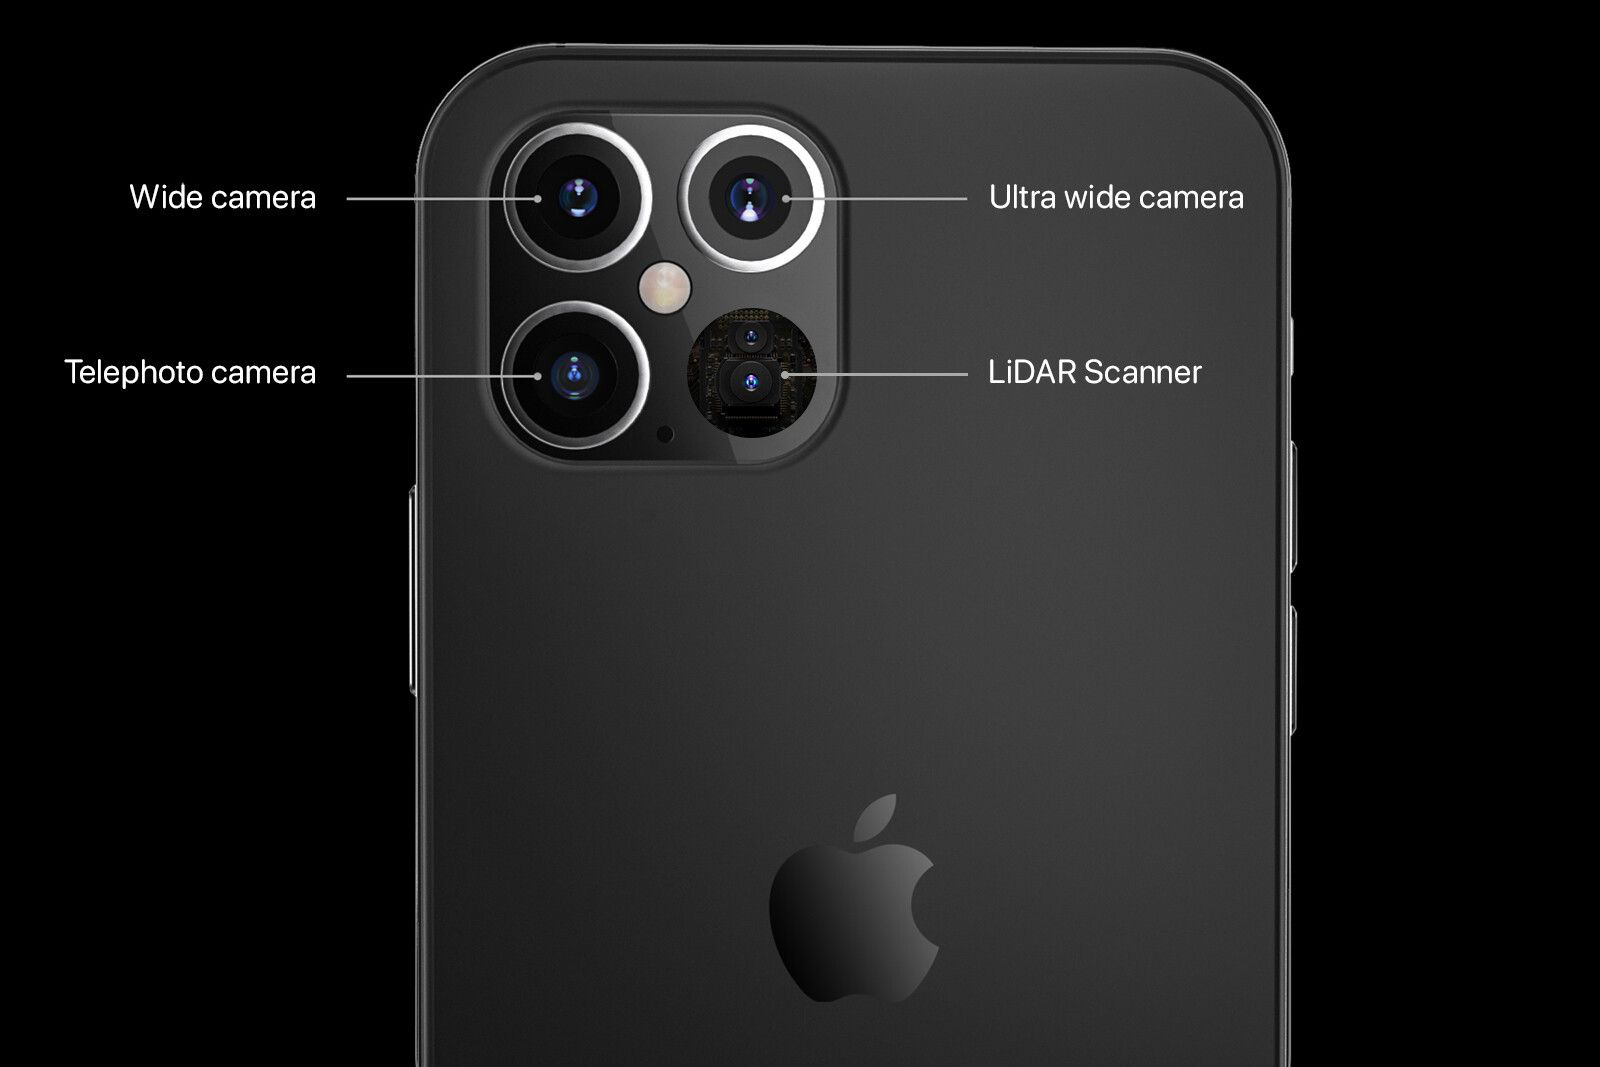 Apple iPhone 12 Pro sẽ được trang bị máy quét LiDAR cực hiện đại của Sony  - Ảnh 1.